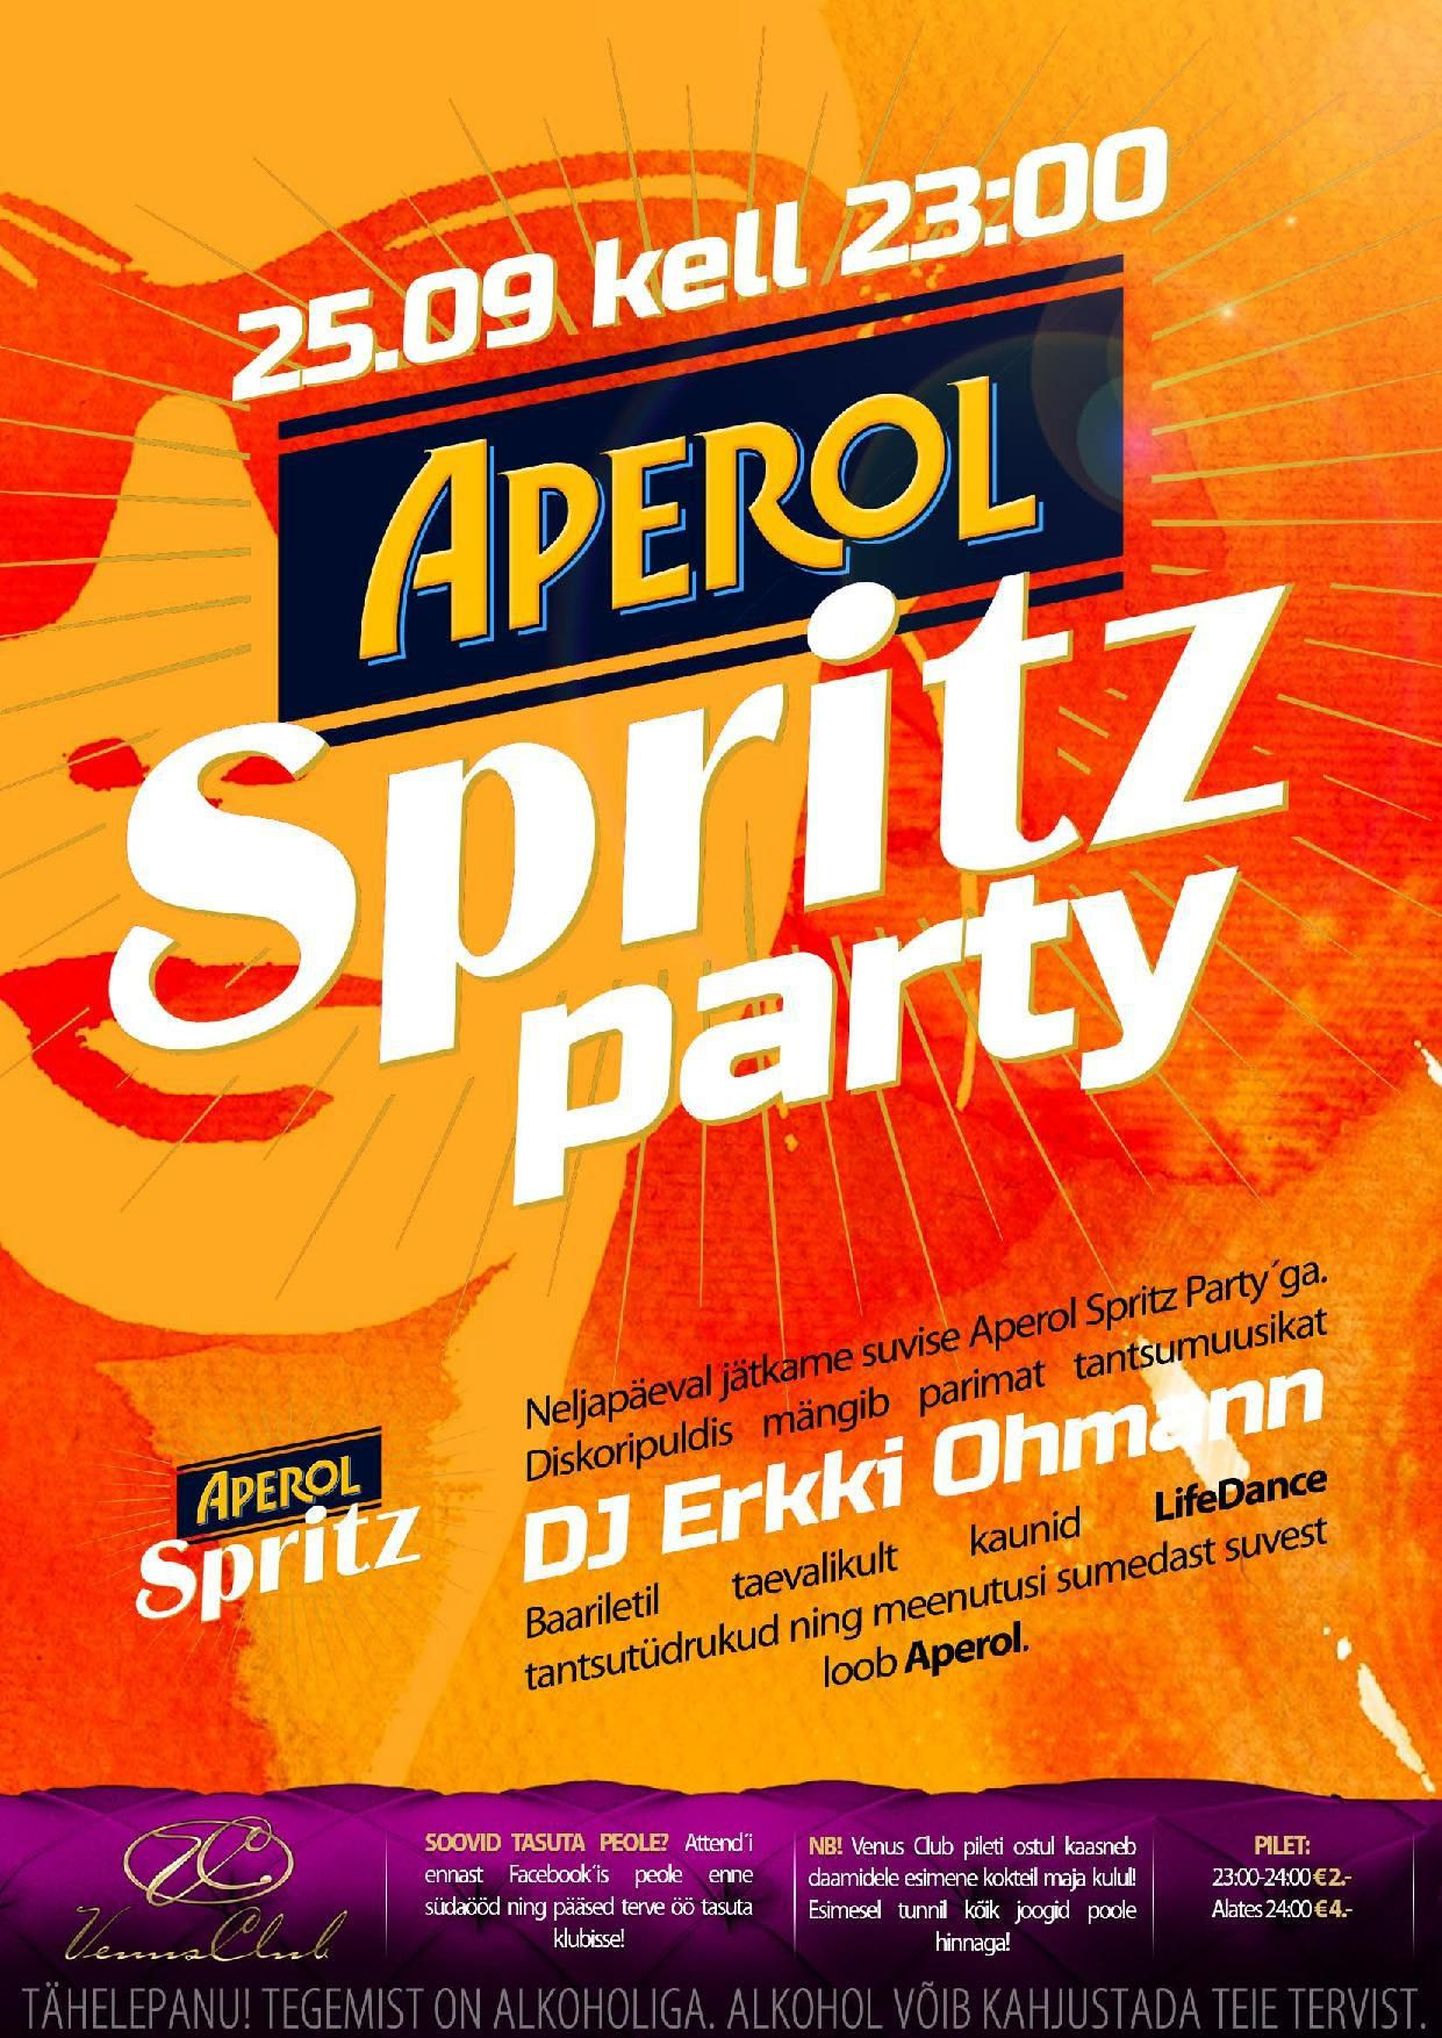 APEROL SPRITZ PARTY